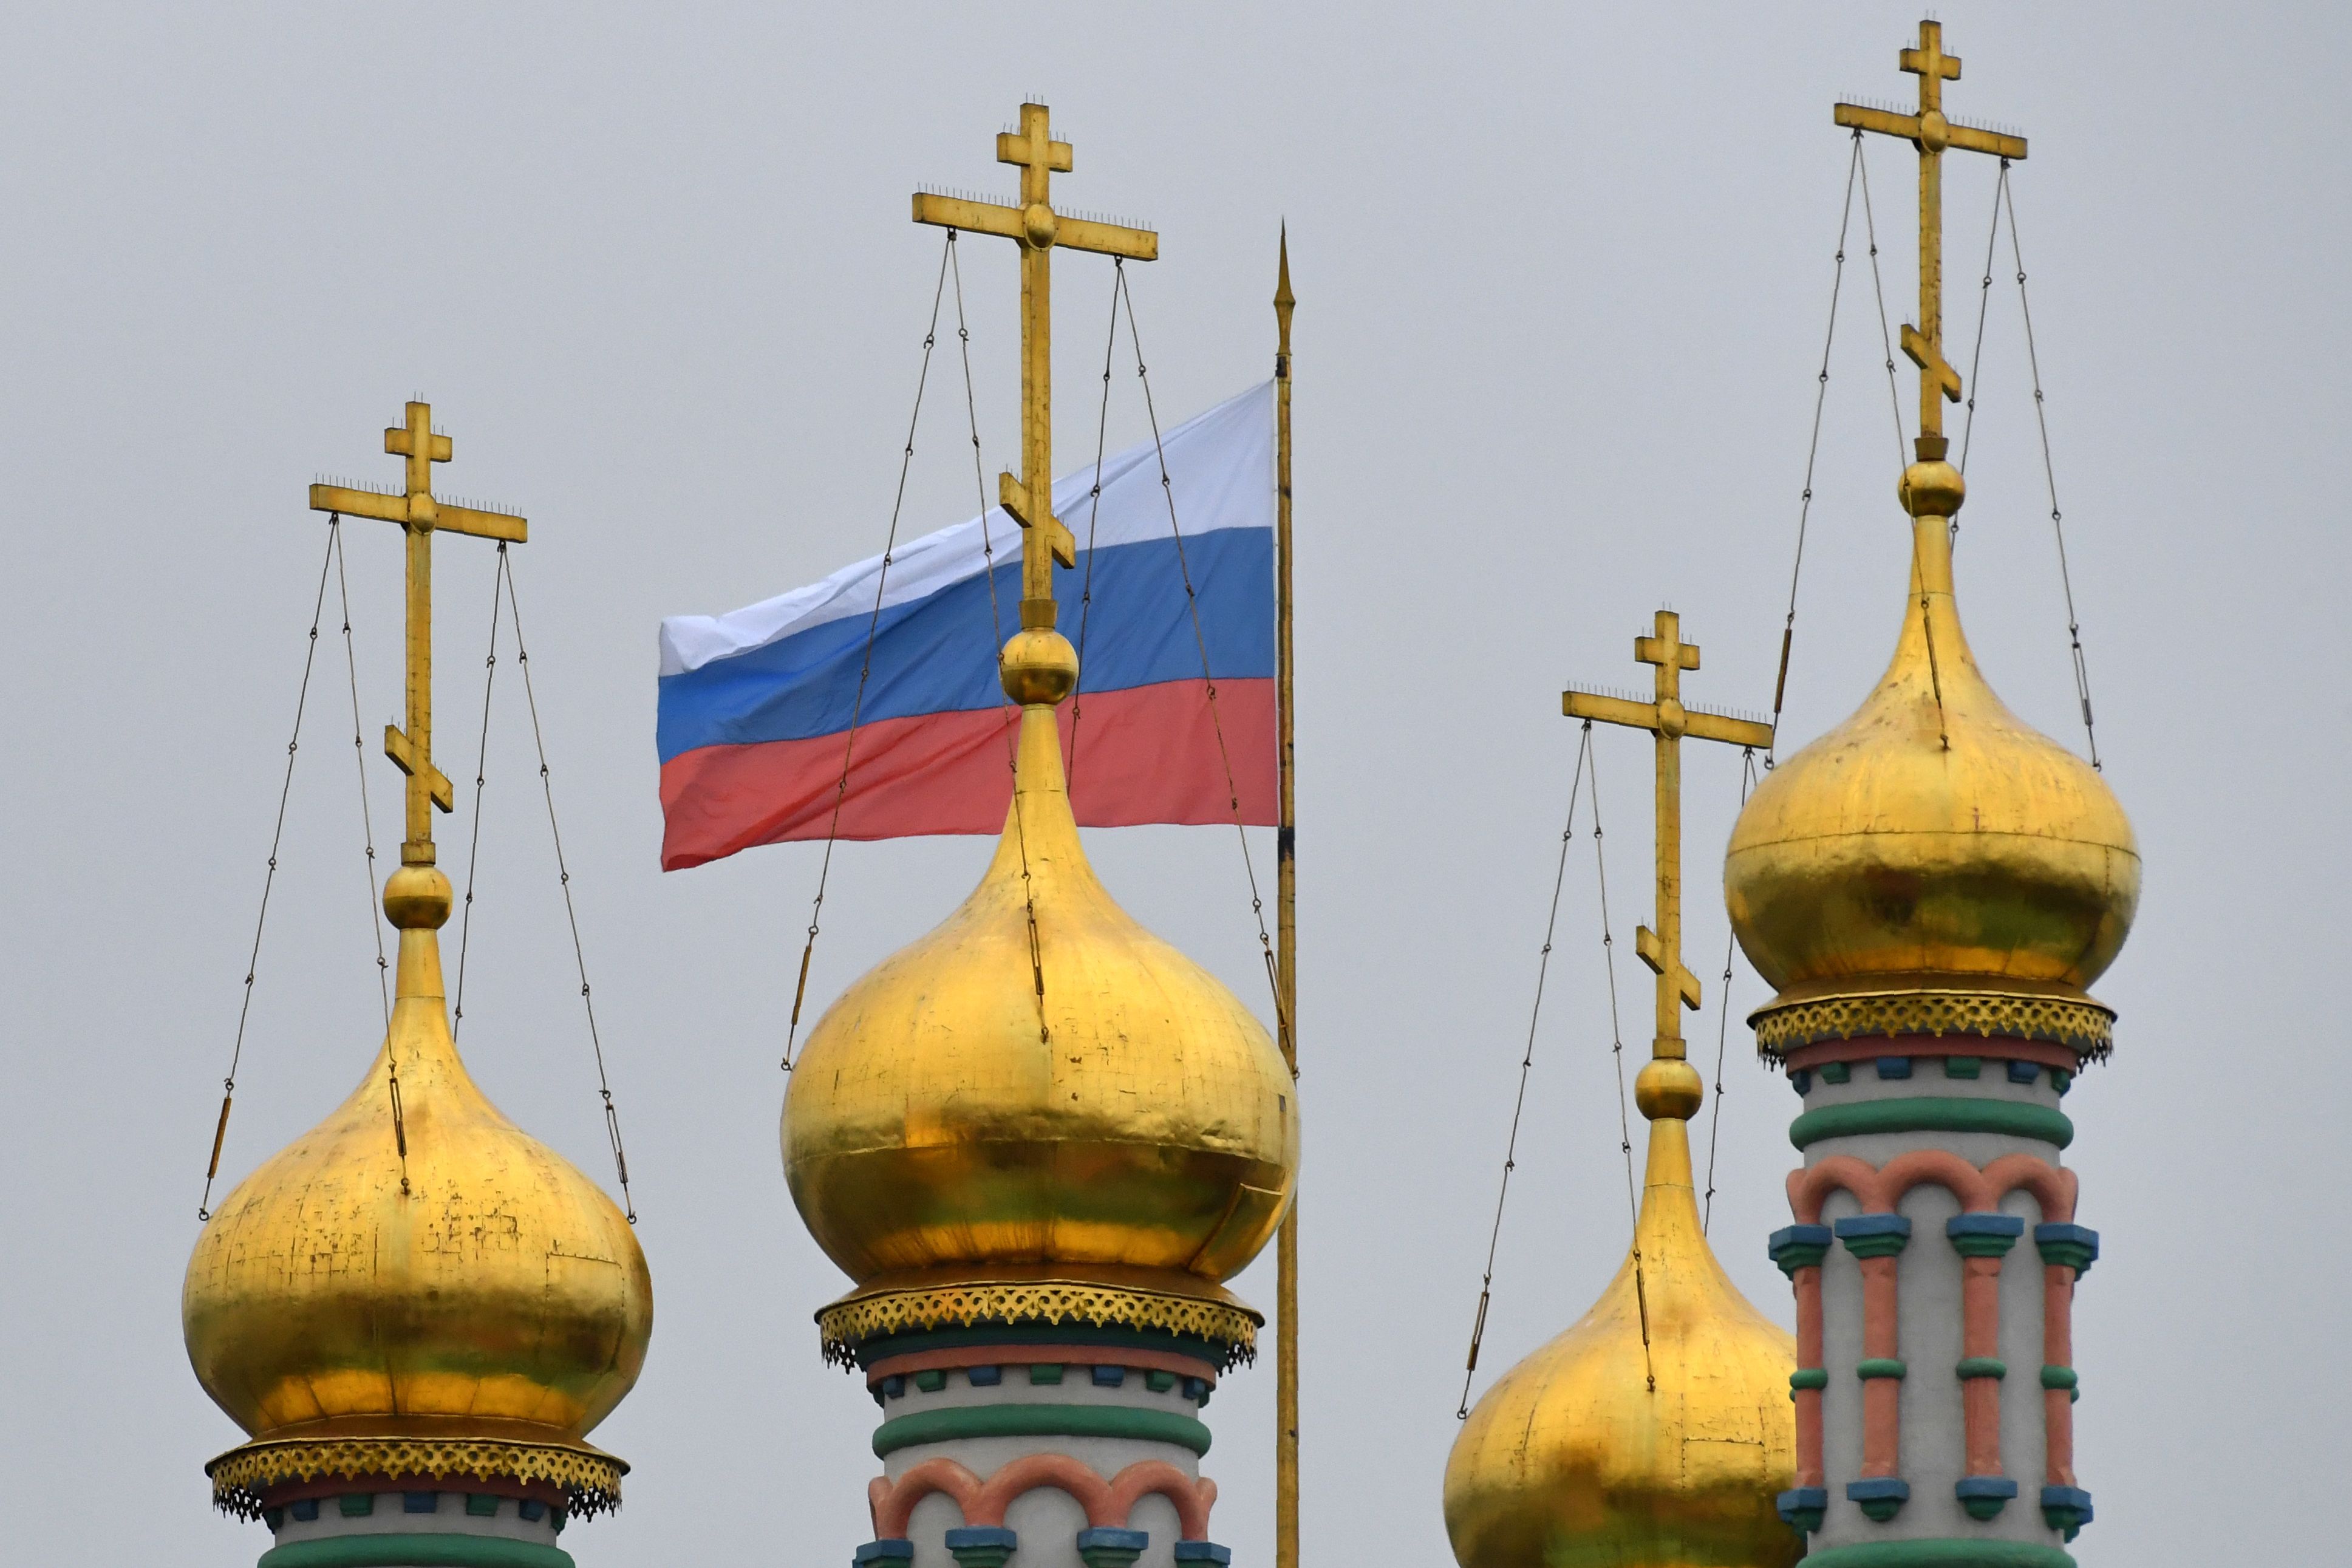 العلم الروسى يرفرف وسط الصلبان